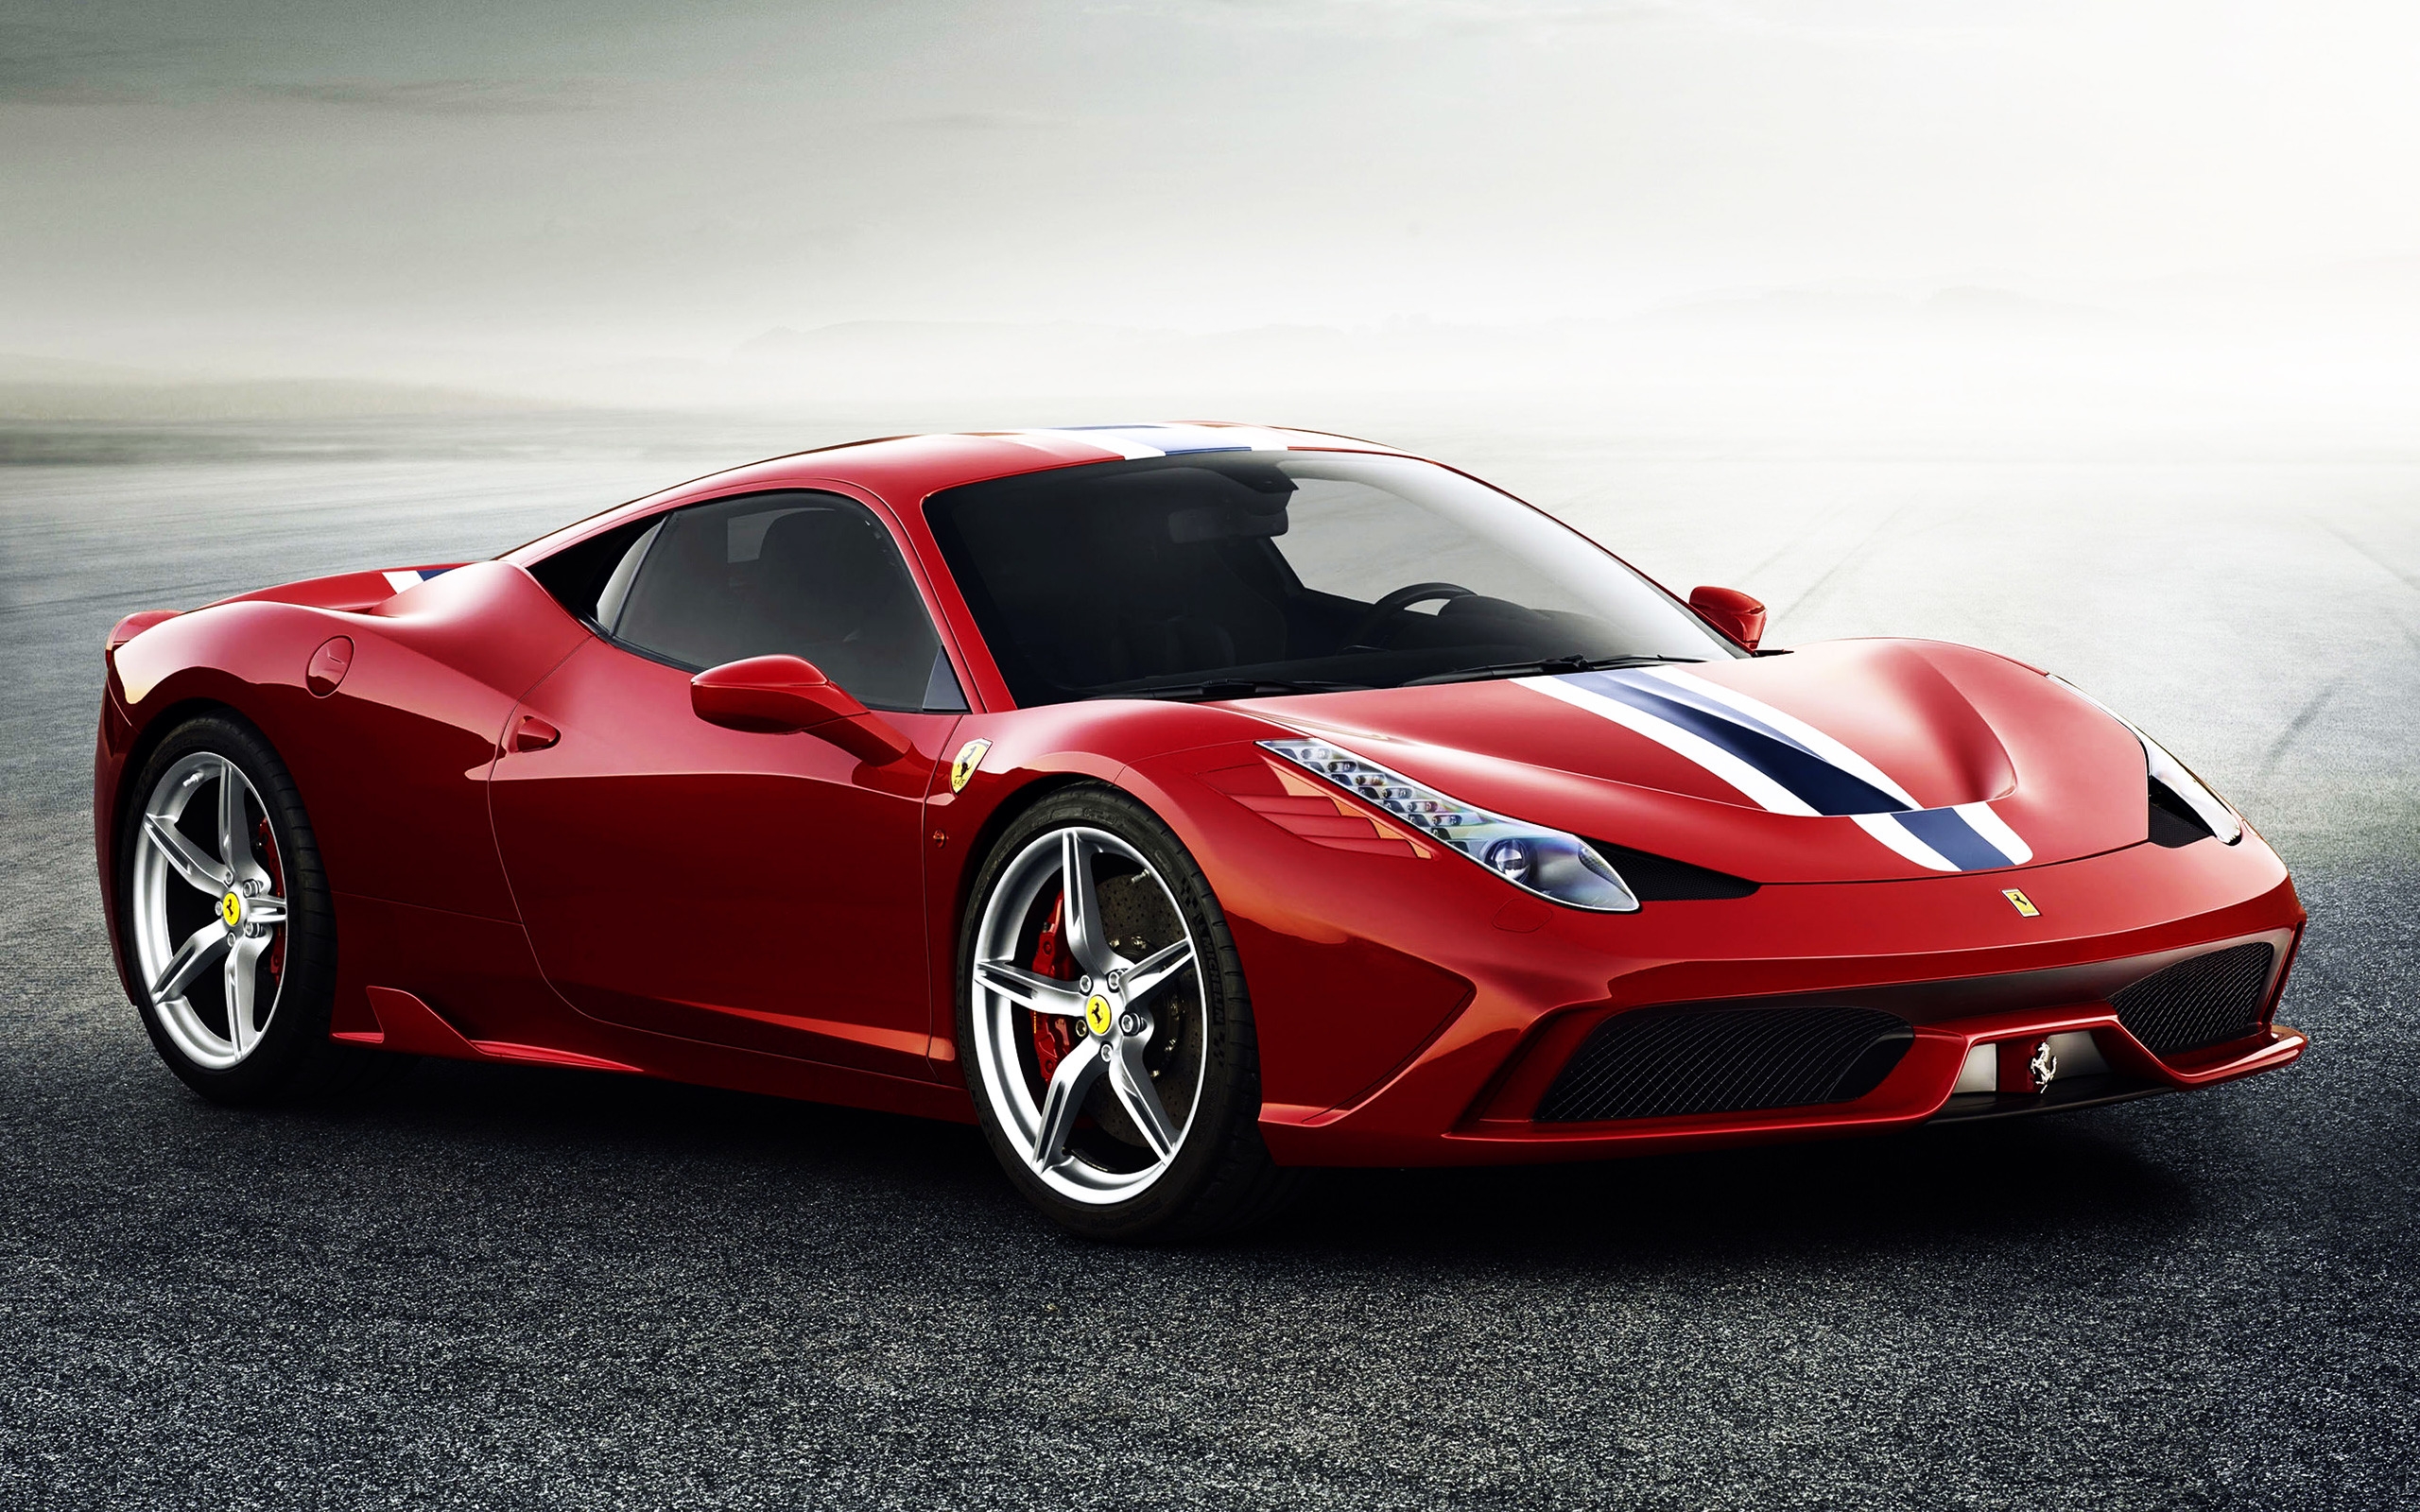 Ferrari 458 Speciale for 2560 x 1600 widescreen resolution